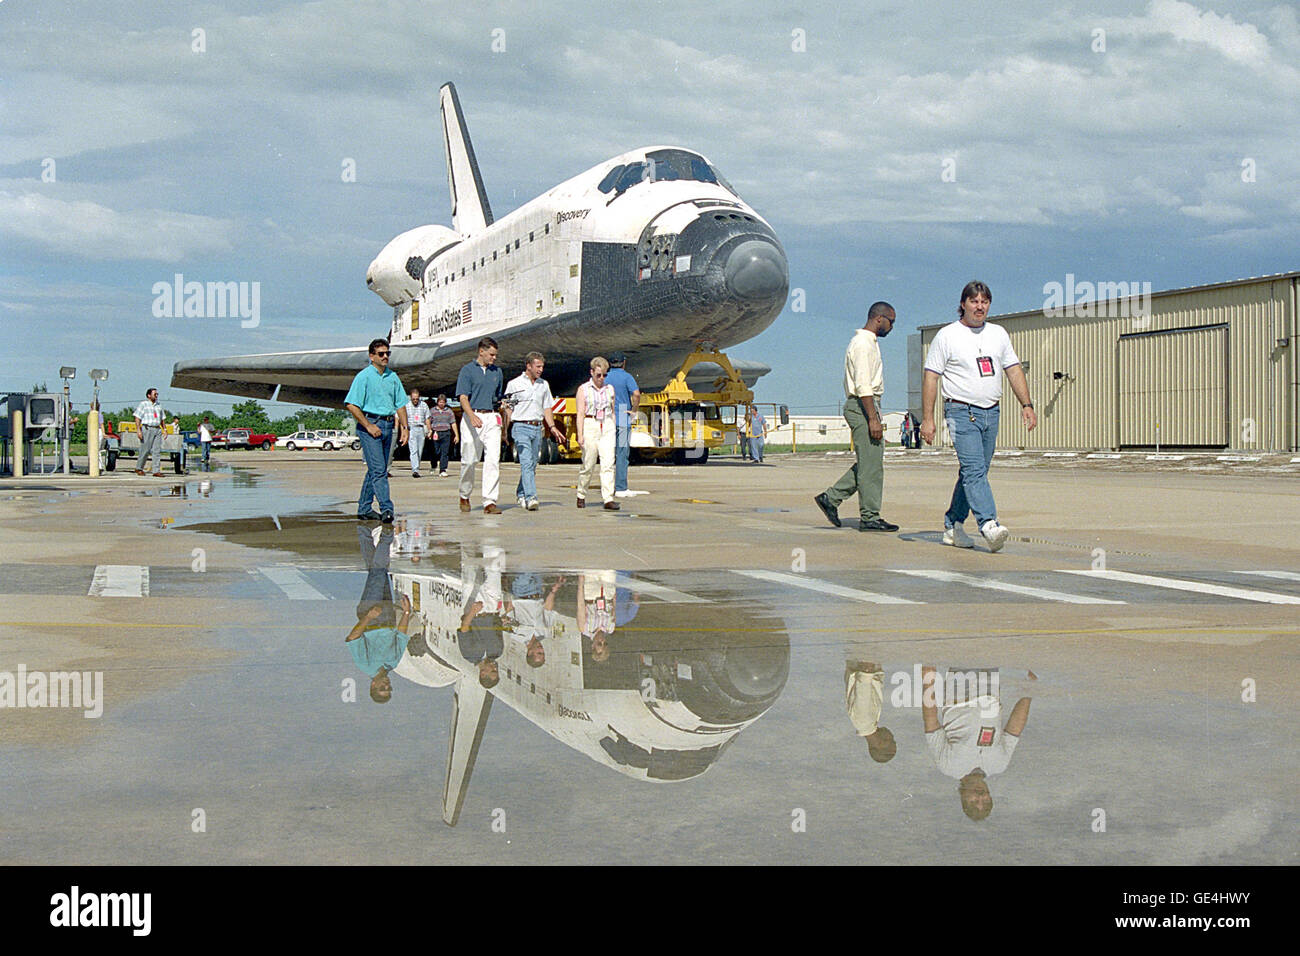 Le operazioni di sicurezza e di altro personale escort orbiter scoperta dall'Orbiter Processing Facility per il gruppo di veicoli Edificio (VN). OV-103 trascorreranno circa cinque giorni lavorativi nel VAB, dove verrà accoppiata con il serbatoio esterno/twin a razzo a propellente solido gruppo booster. L'assemblato completamente lo Space Shuttle sarà poi esteso a Launch Pad 39B. Il decollo sulla missione STS-64 è prevista per i primi di settembre. Immagine # : 94PC-0982 Foto Stock